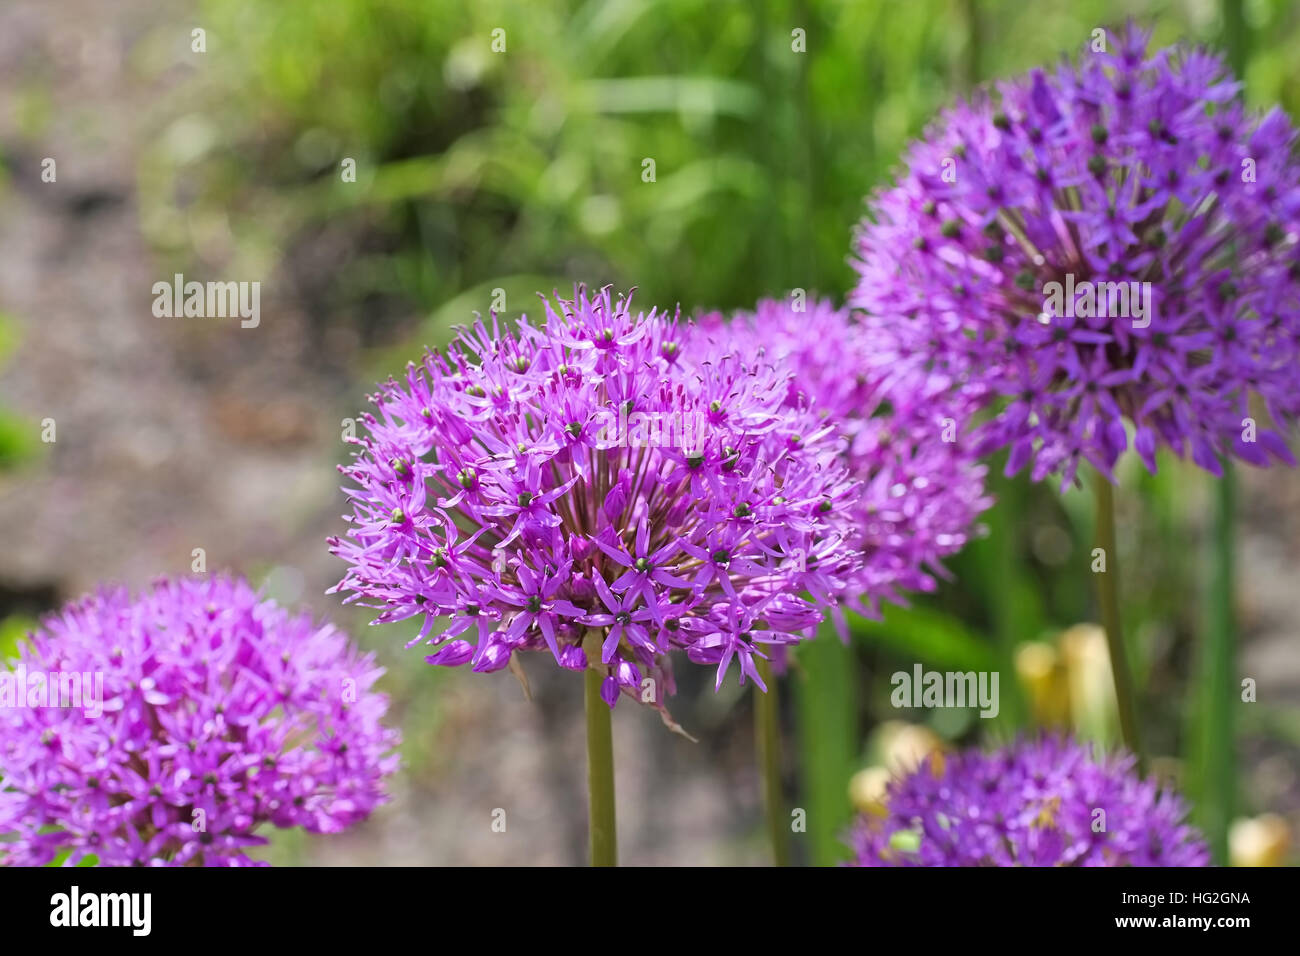 Zierlauch , lila Blumen im Garten - cipolla ornamentale Allium, viola le sfere di fiore in giardino Foto Stock